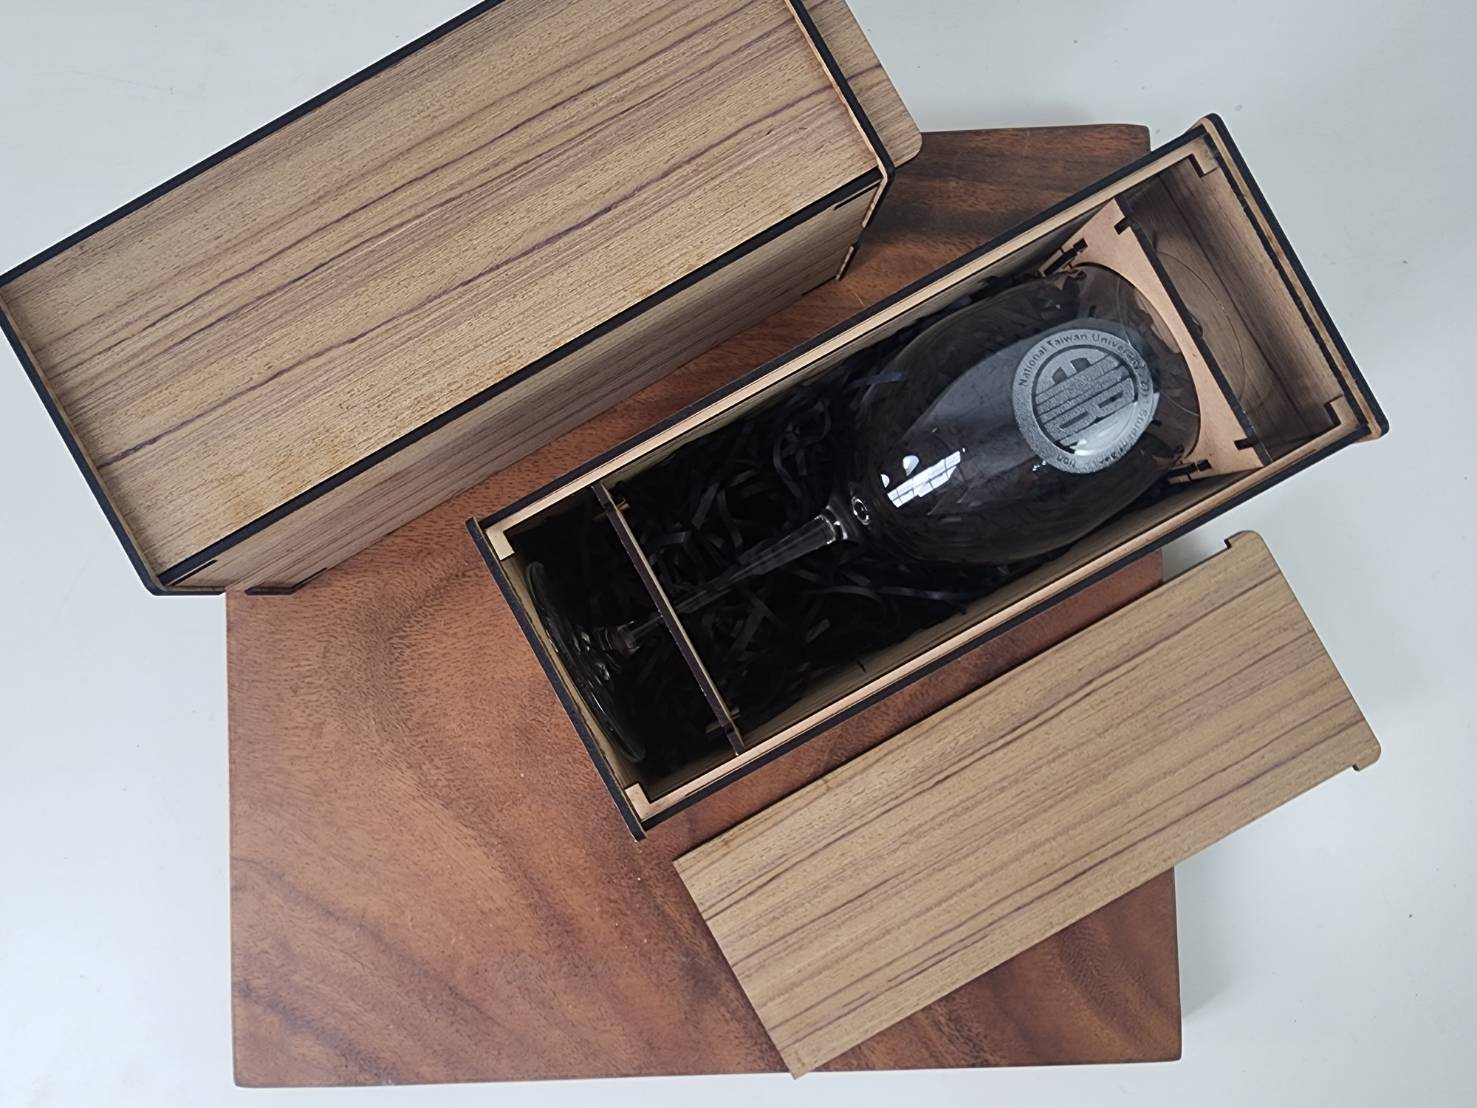 無鉛水晶玻璃杯雕刻 卡本內紅酒杯470ml 專屬木盒包裝單入 | 第二張展示圖